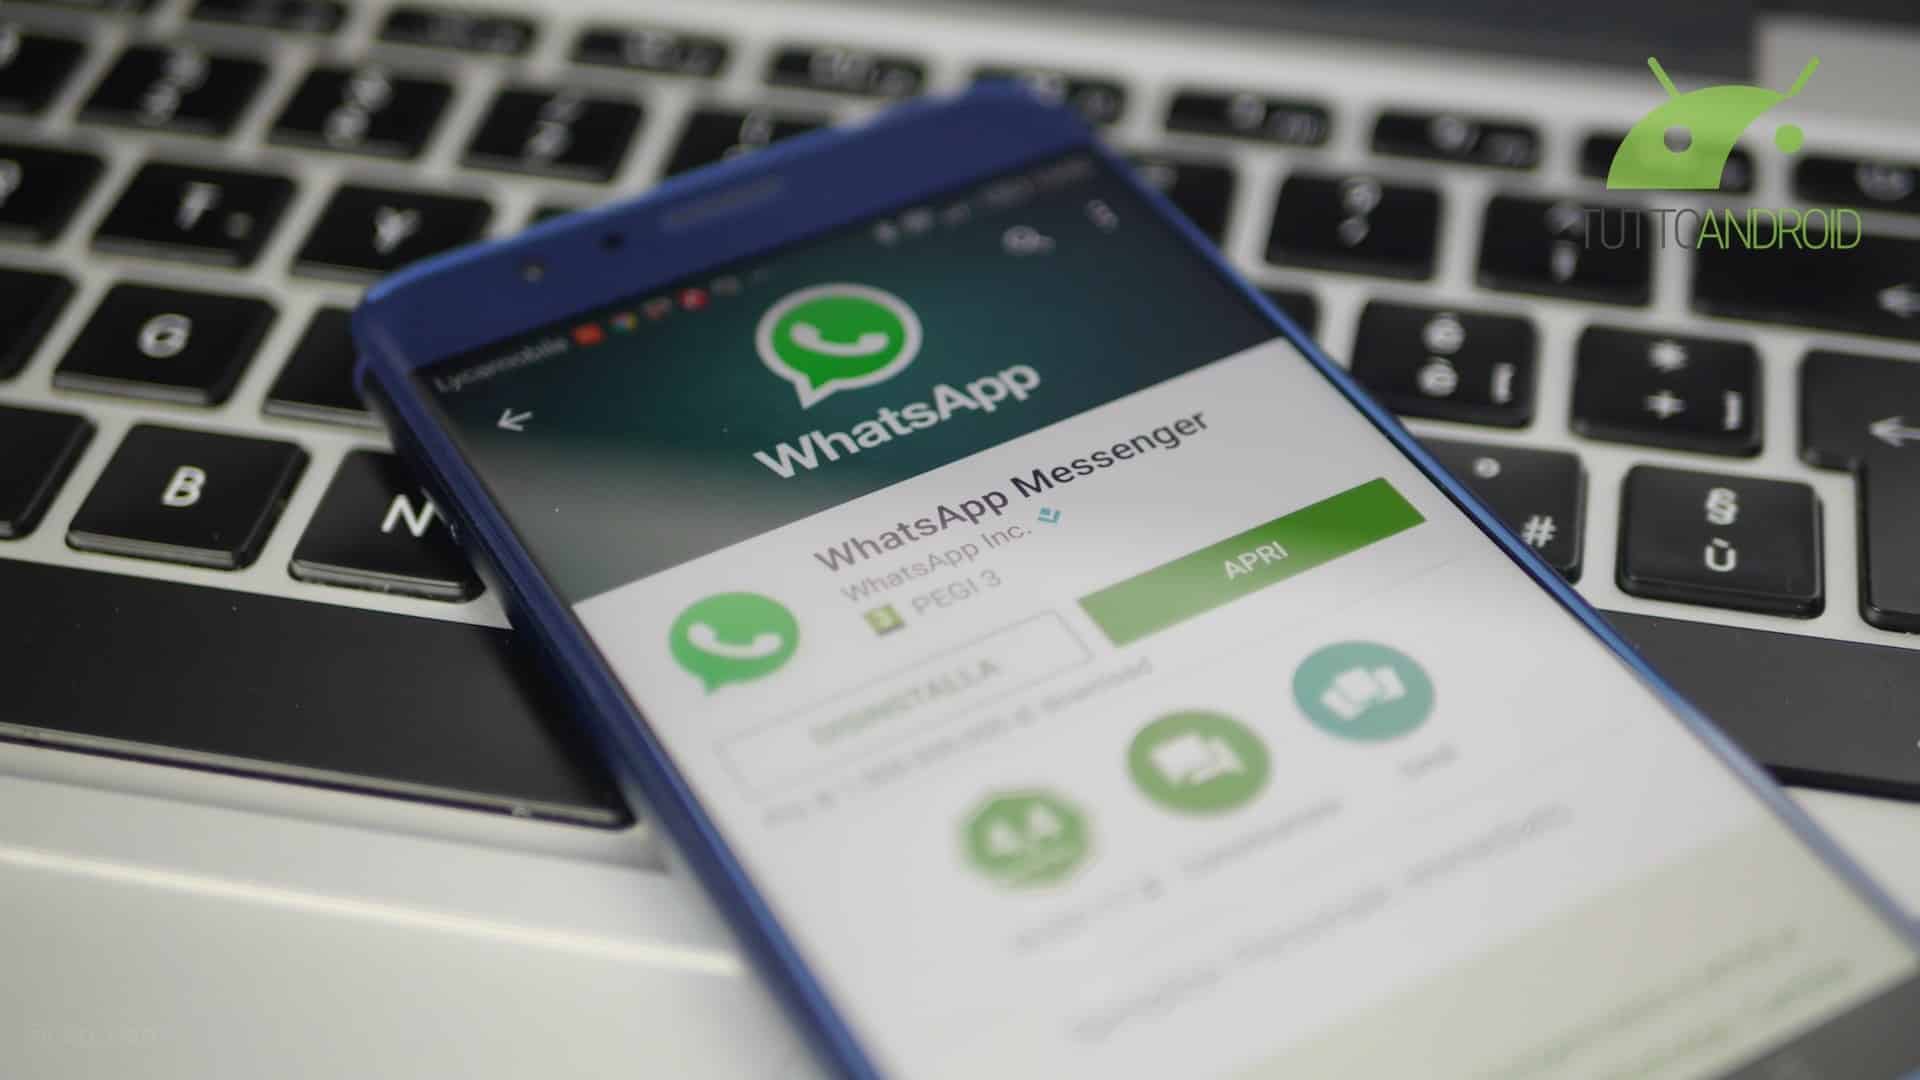 WhatsApp come Maps in arrivo la condivisione della posizione